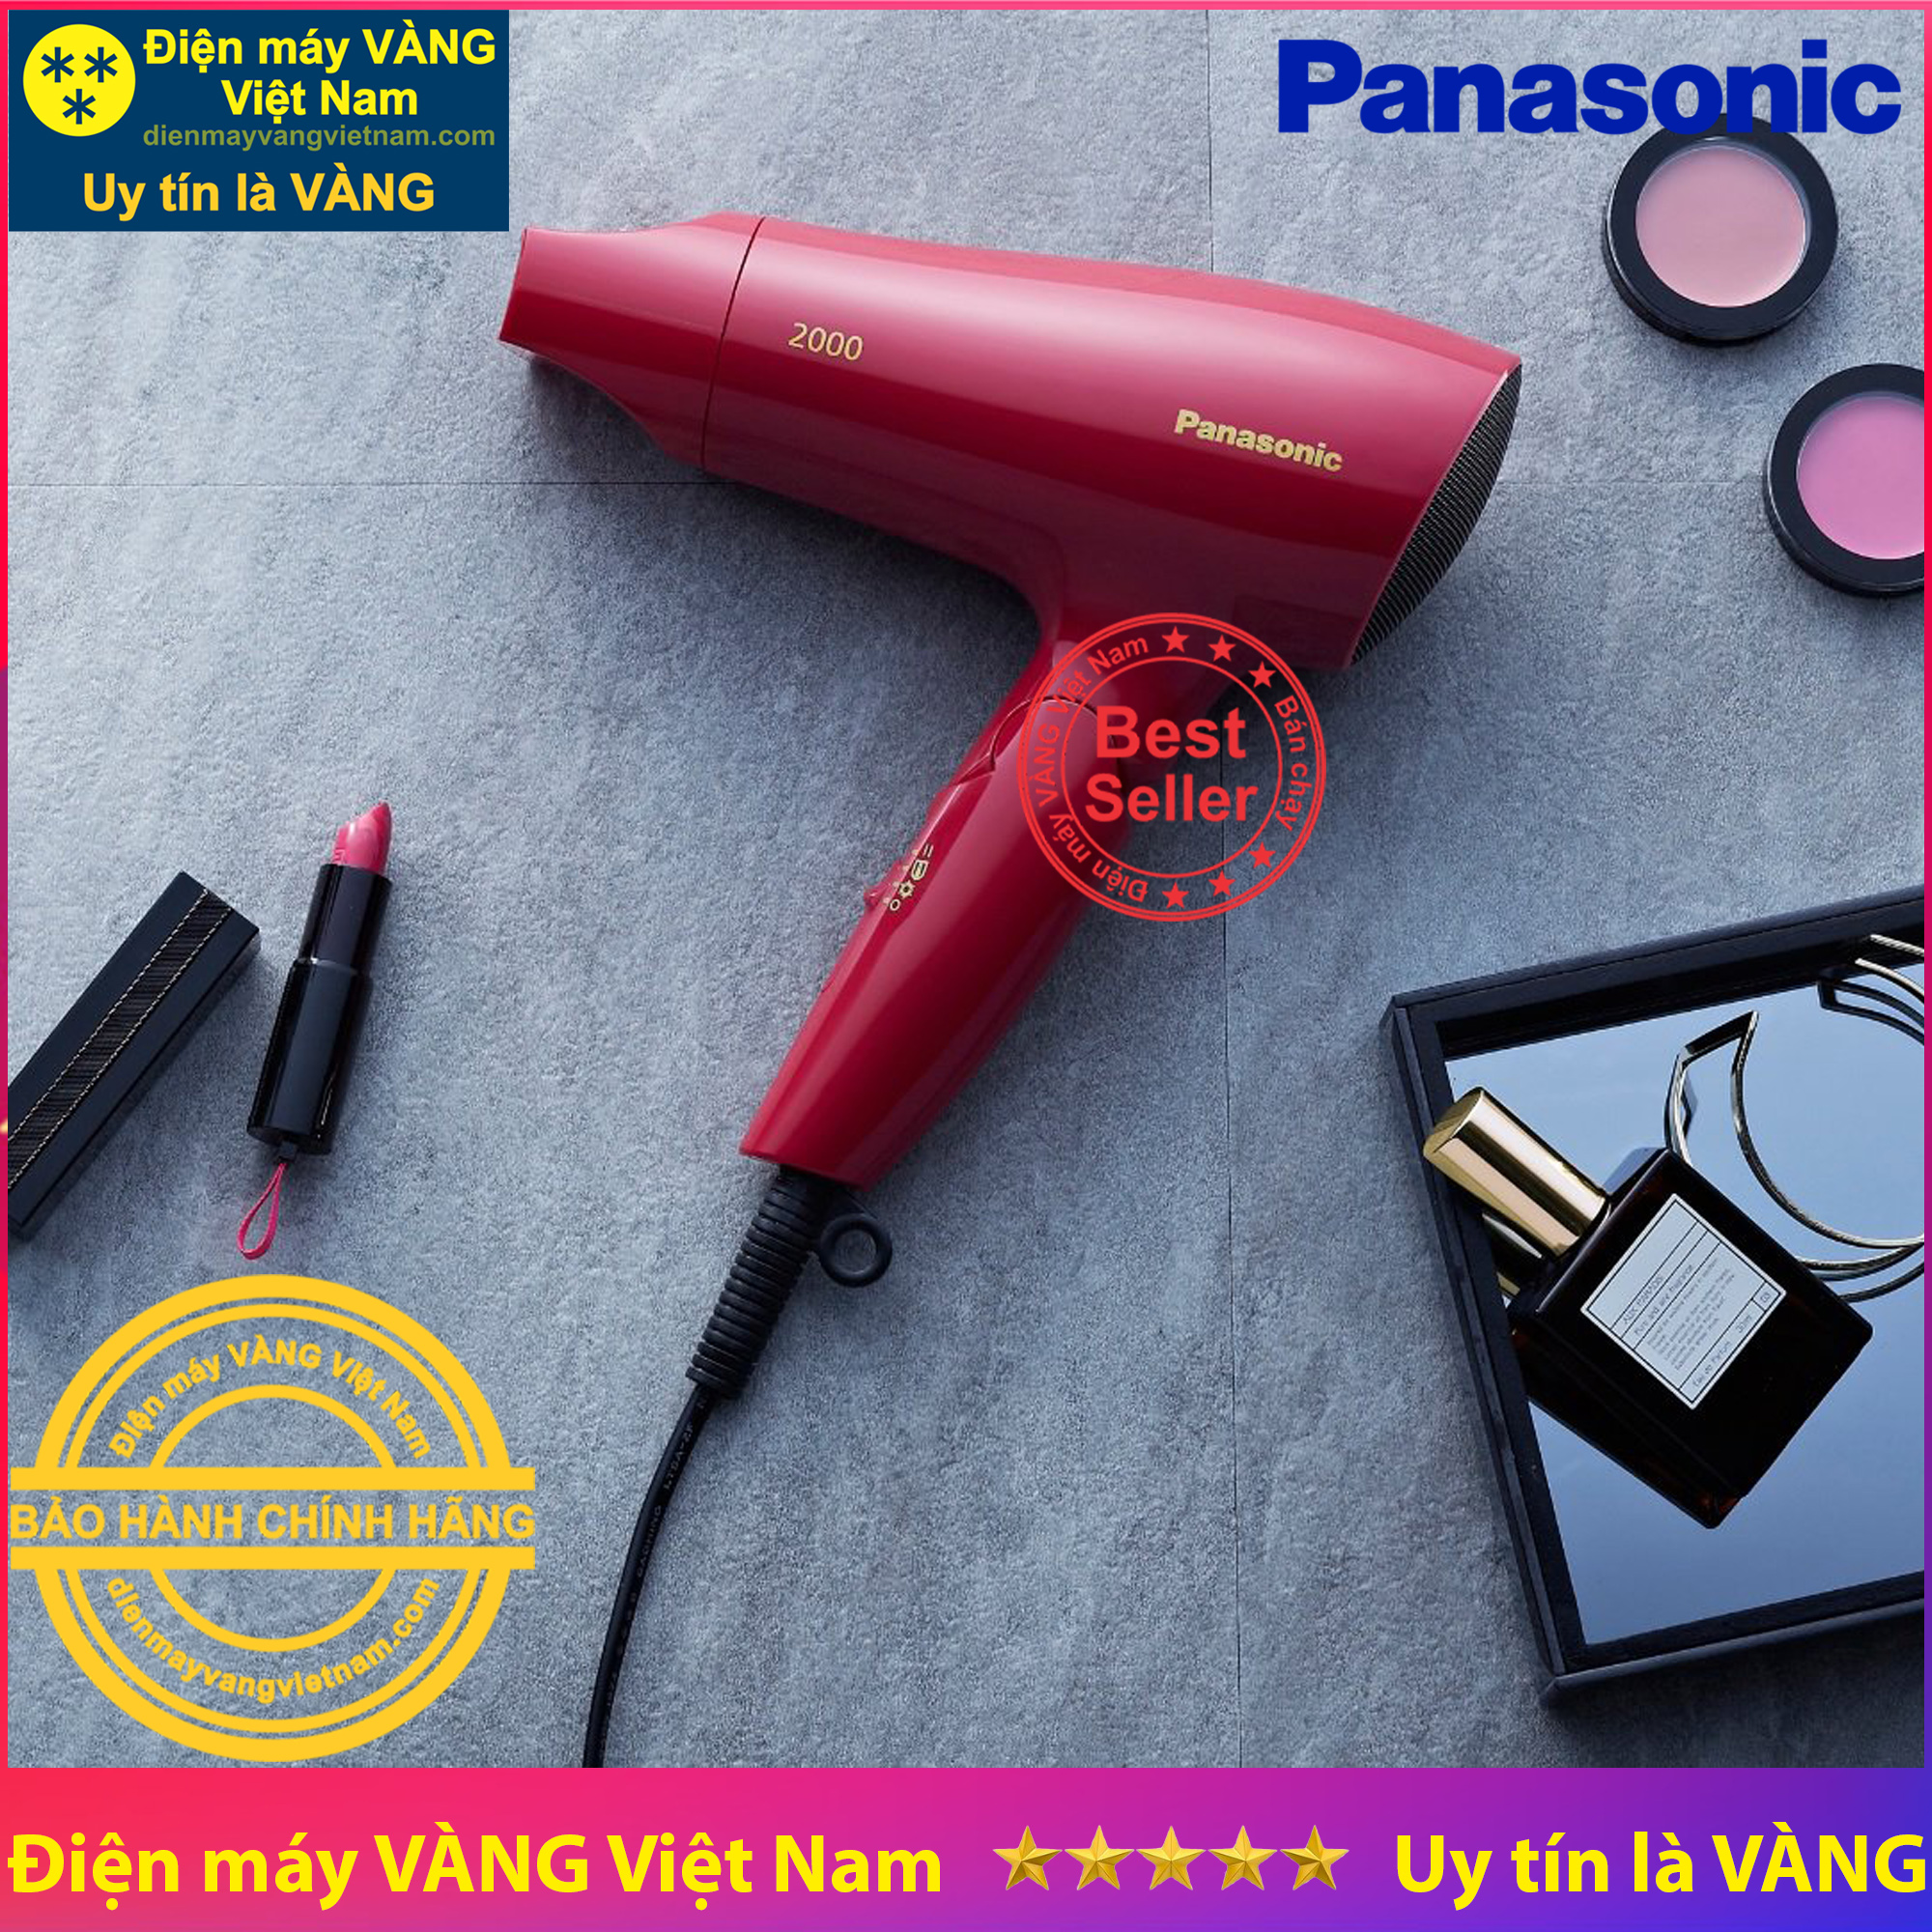 Máy sấy tóc Thái Panasonic EH-ND64-P645 2000W